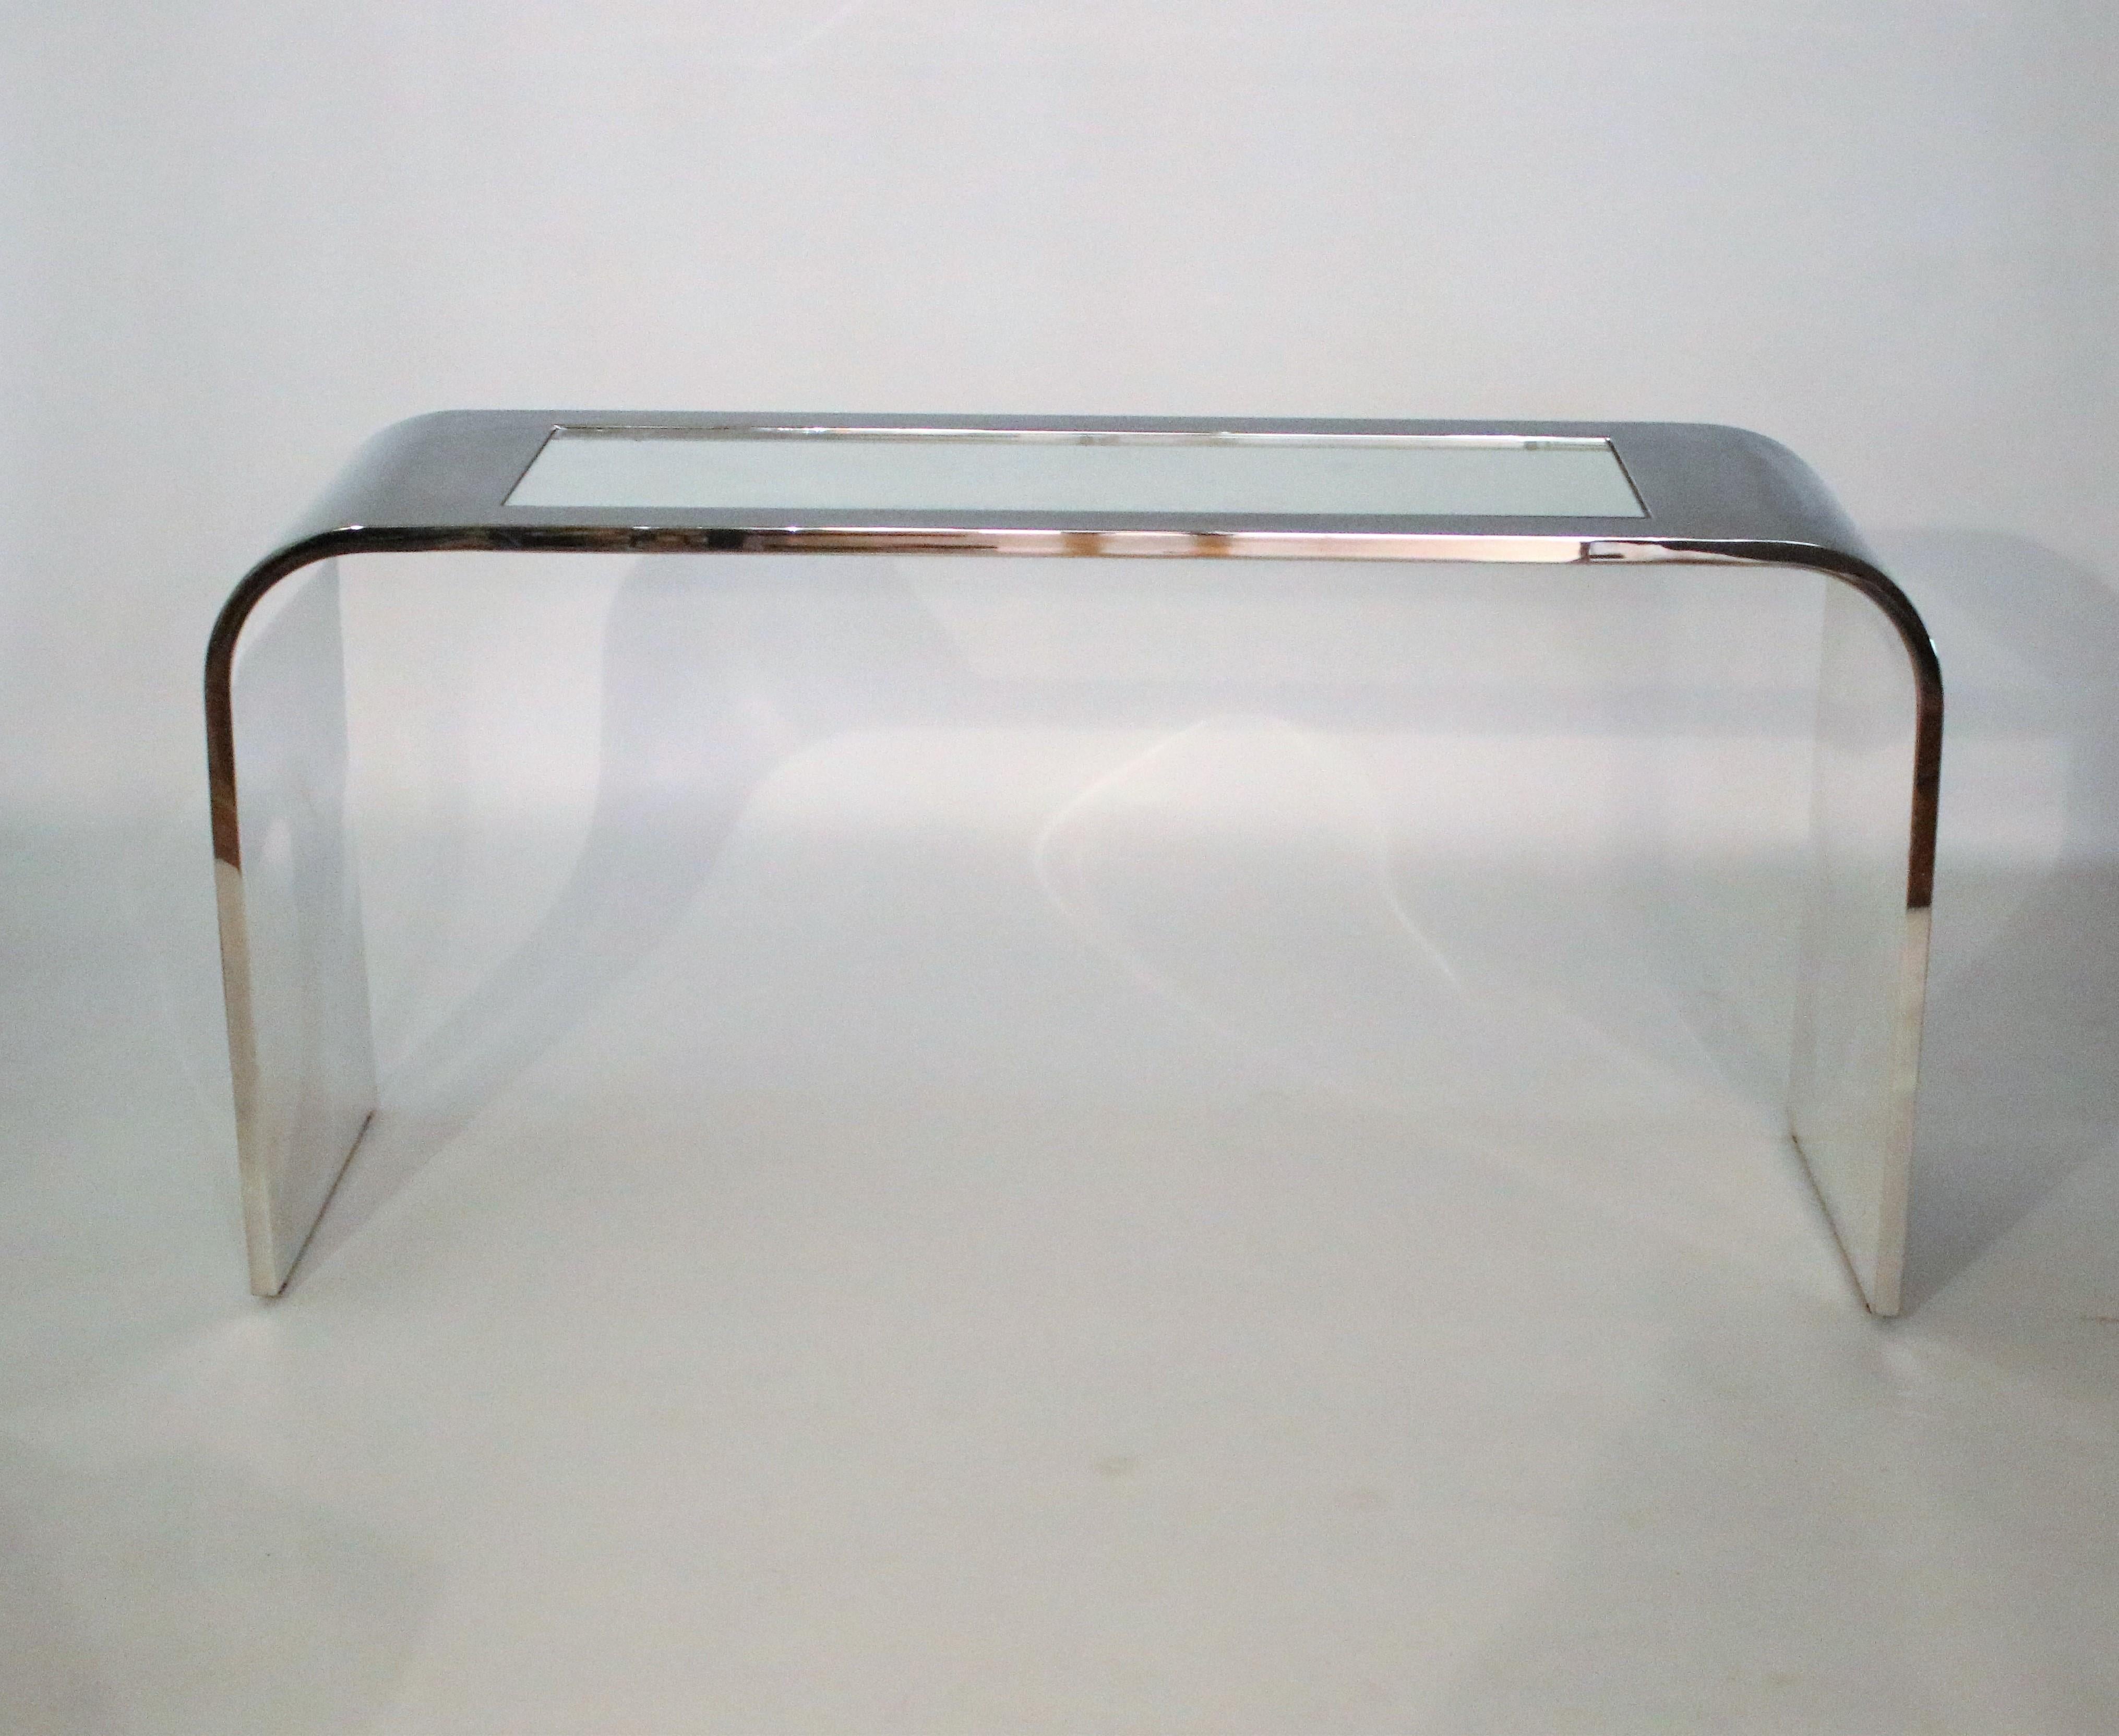 Console cascade en acier inoxydable poli et miroité avec insert en verre des années 1970, conçue par Stanley Jay Friedman pour Brueton. Monté sur des patins en acier réglables.
 